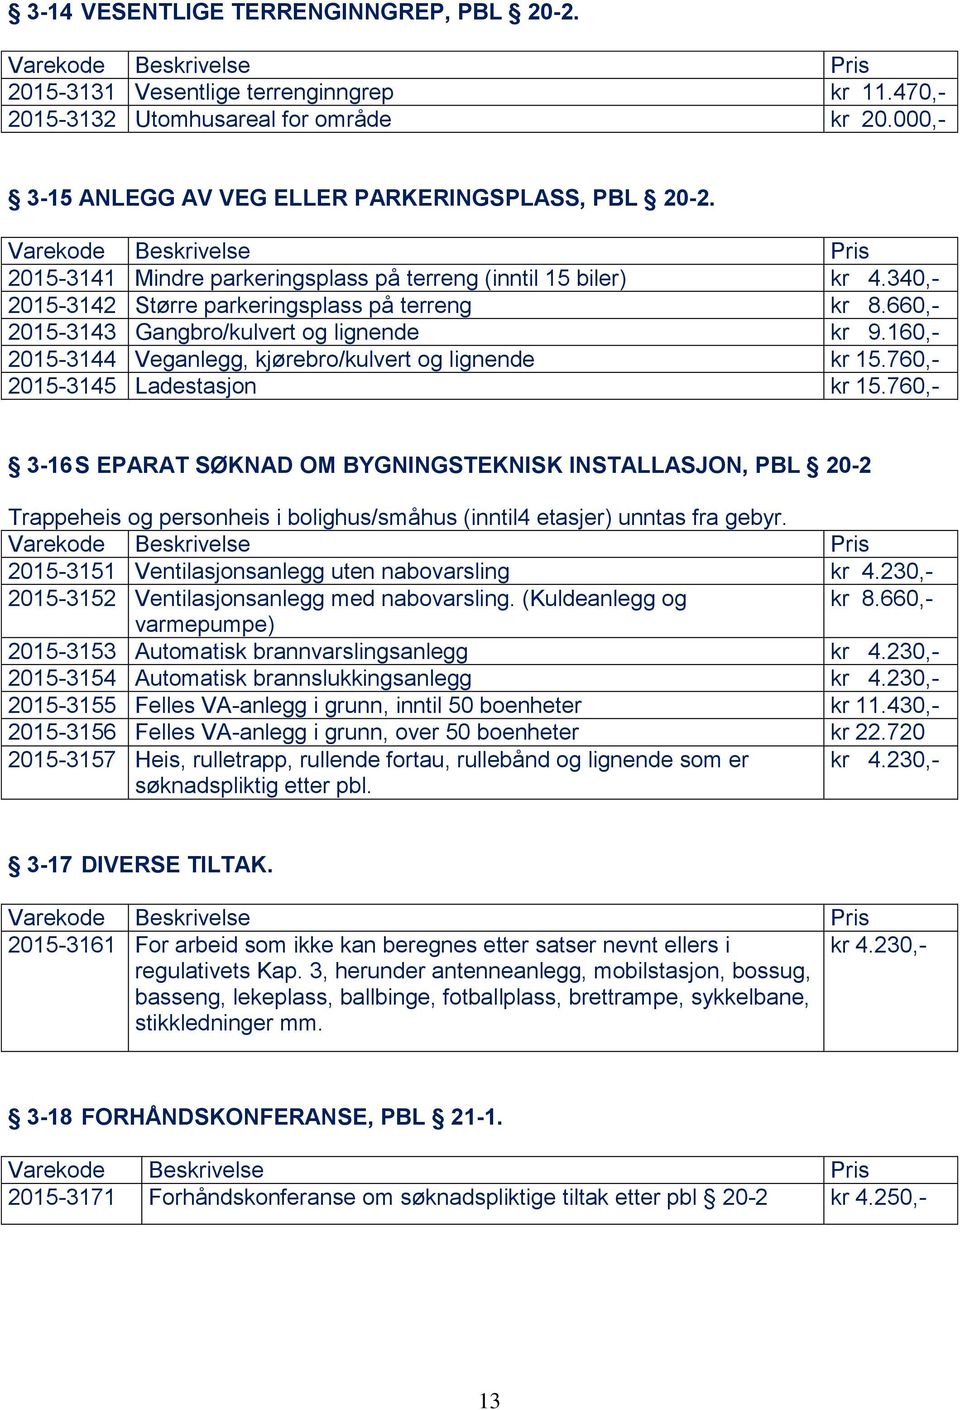 160,- 2015-3144 Veganlegg, kjørebro/kulvert og lignende kr 15.760,- 2015-3145 Ladestasjon kr 15.